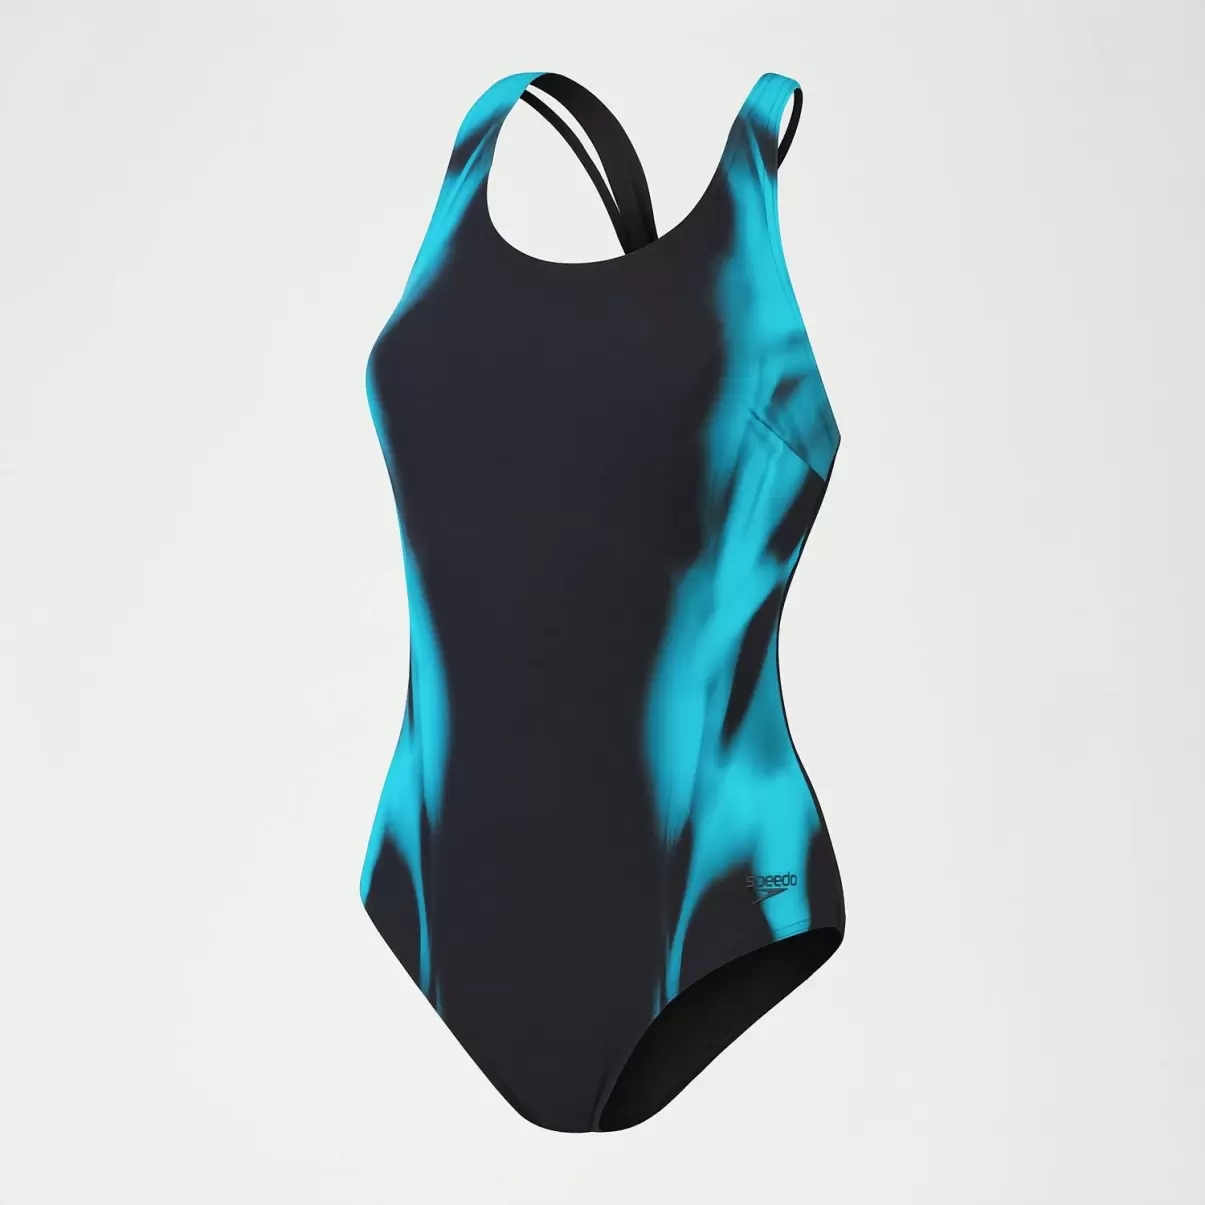 Körperbetont Speedo Damen Formender Bedruckter Calypso-Badeanzug Für Damen Schwarz/Blau - 3